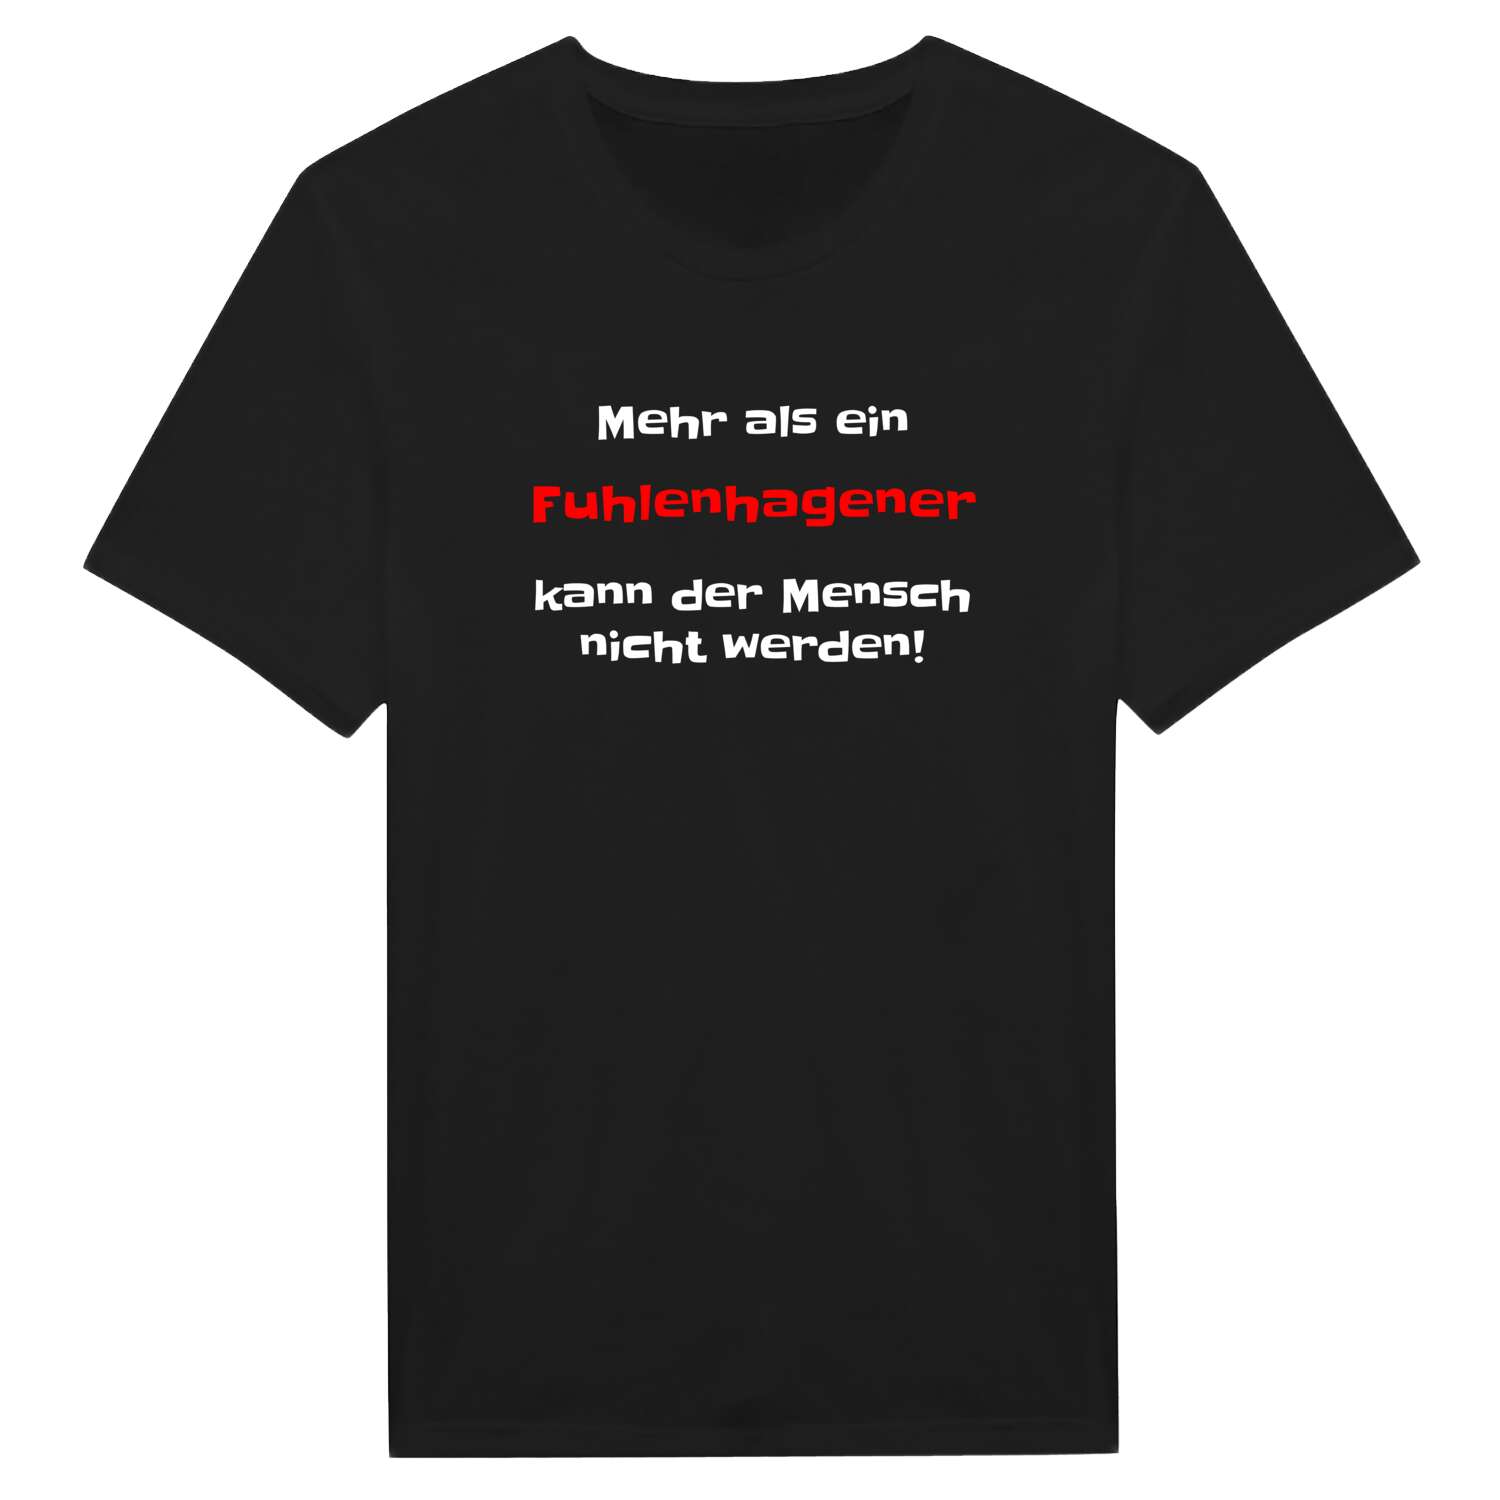 Fuhlenhagen T-Shirt »Mehr als ein«